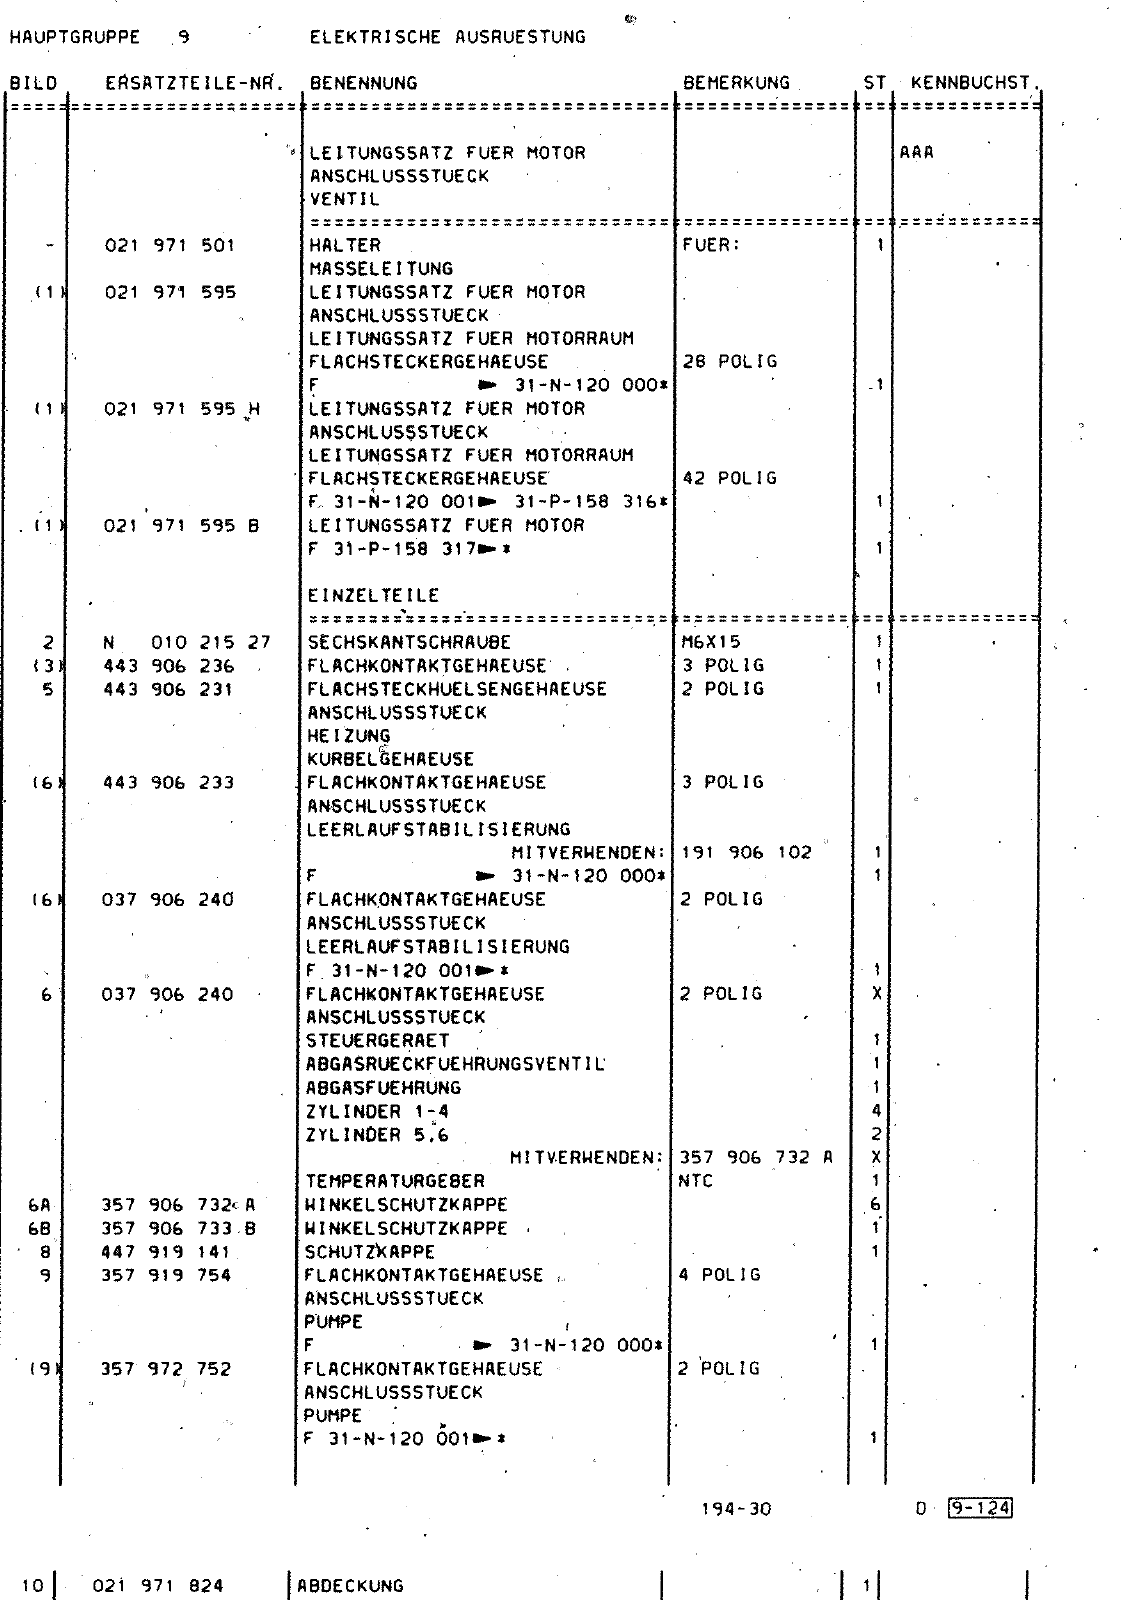 Vorschau Passat Mod 92-93 Seite 1150